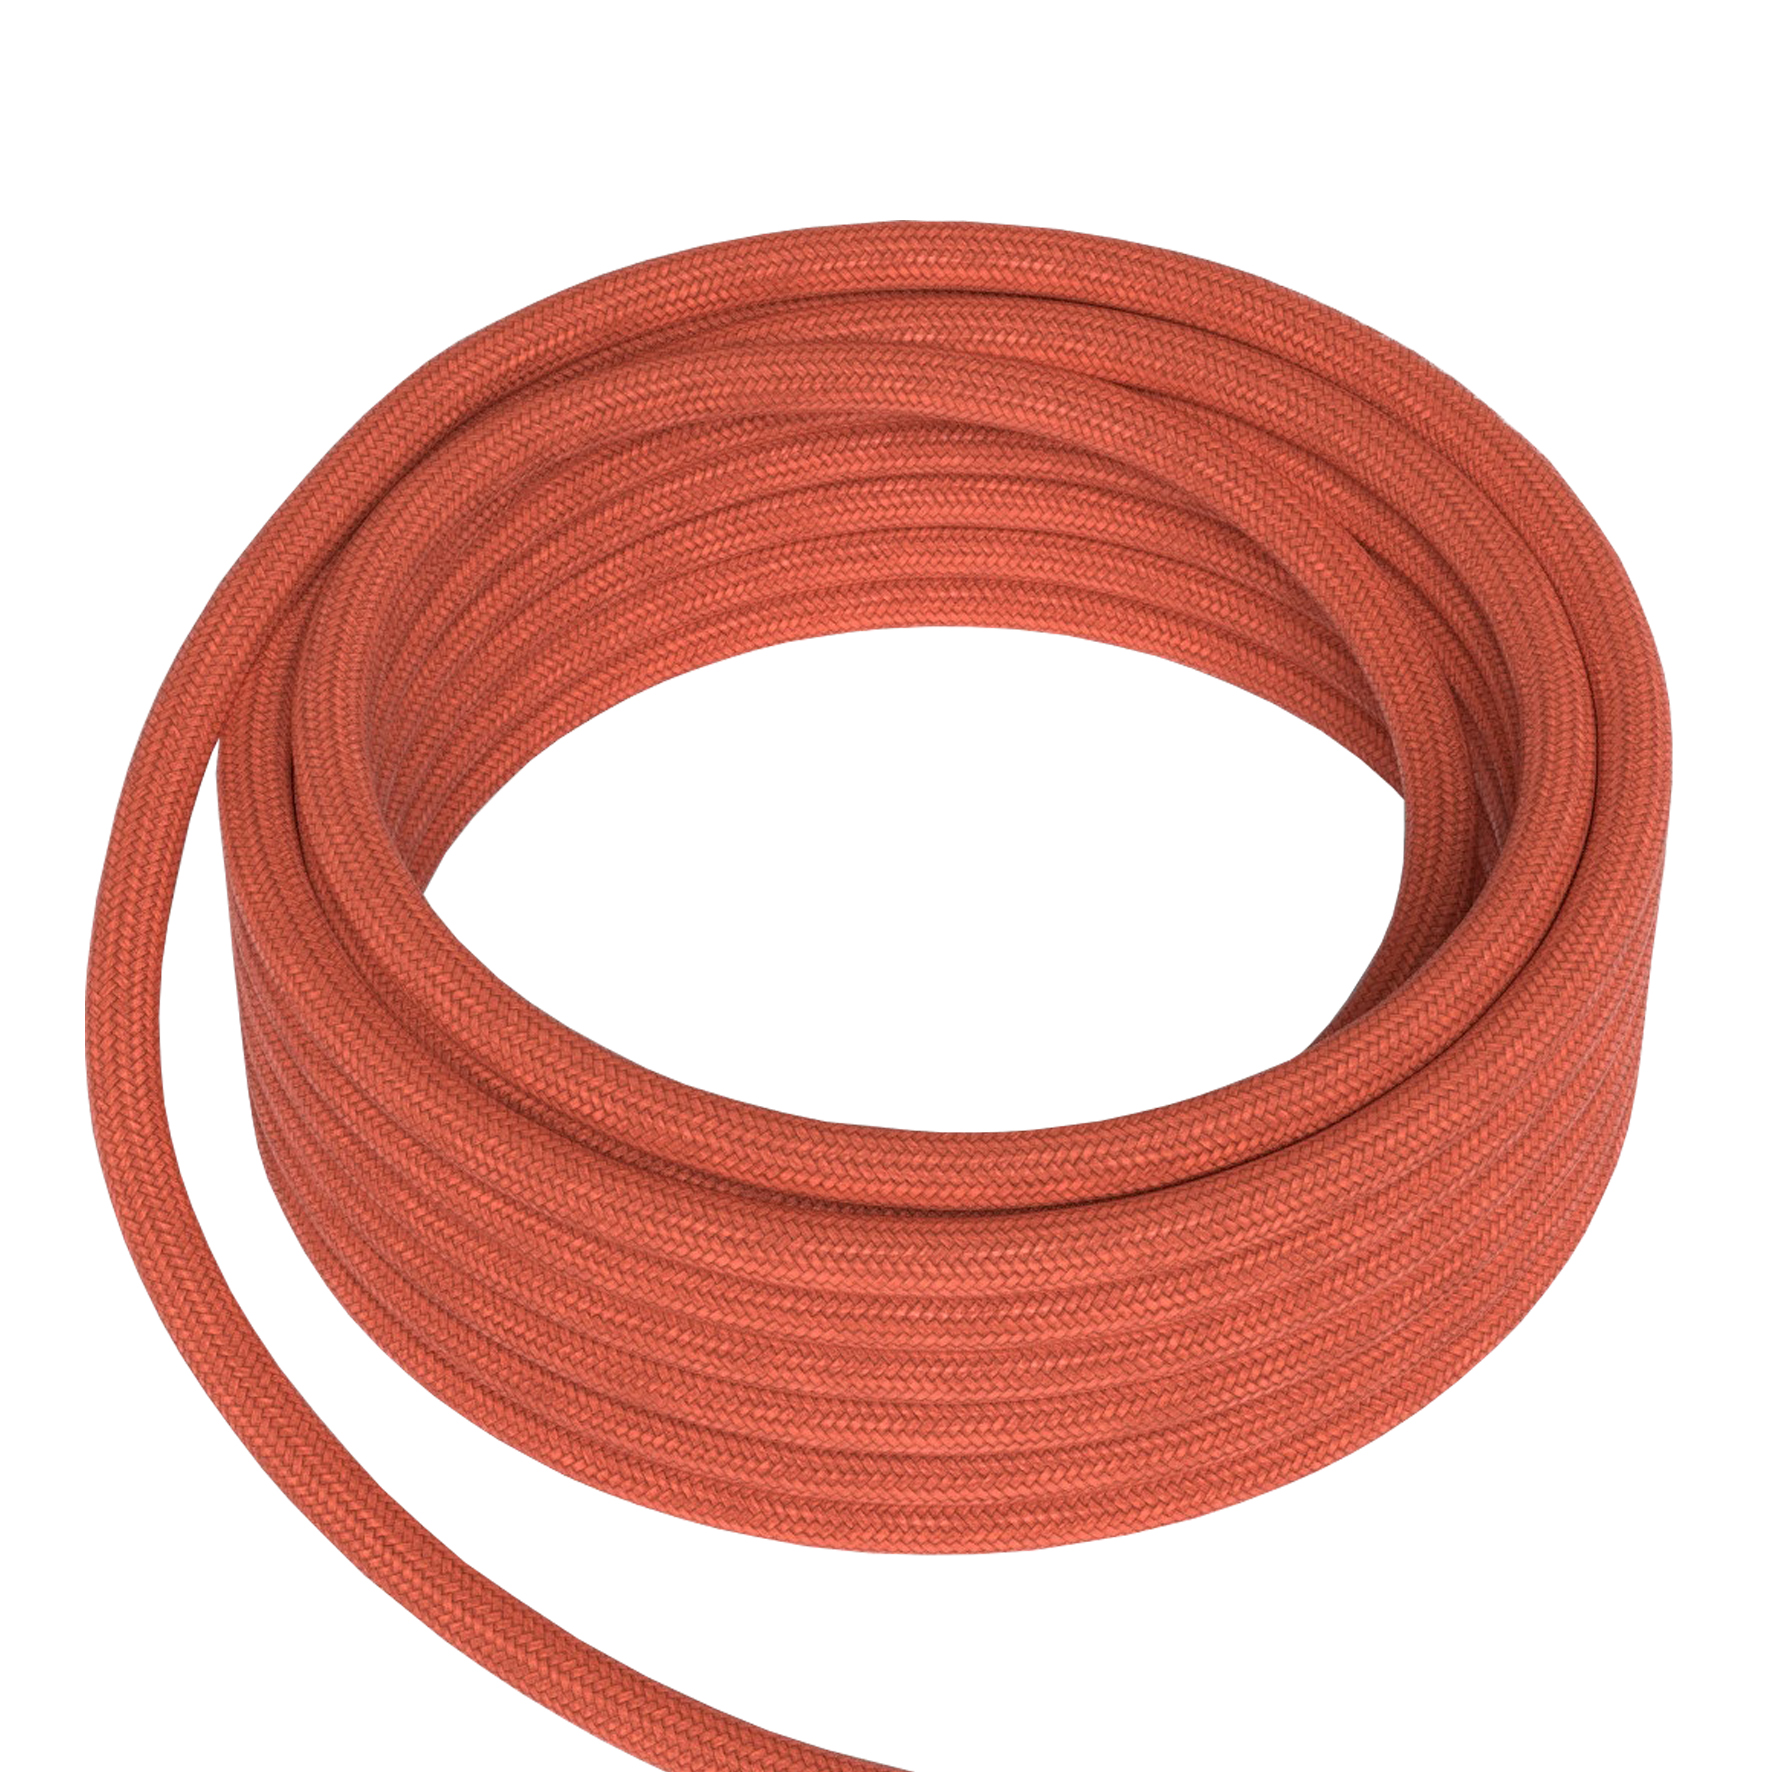 Textile Cable 2C Orange 1.5M